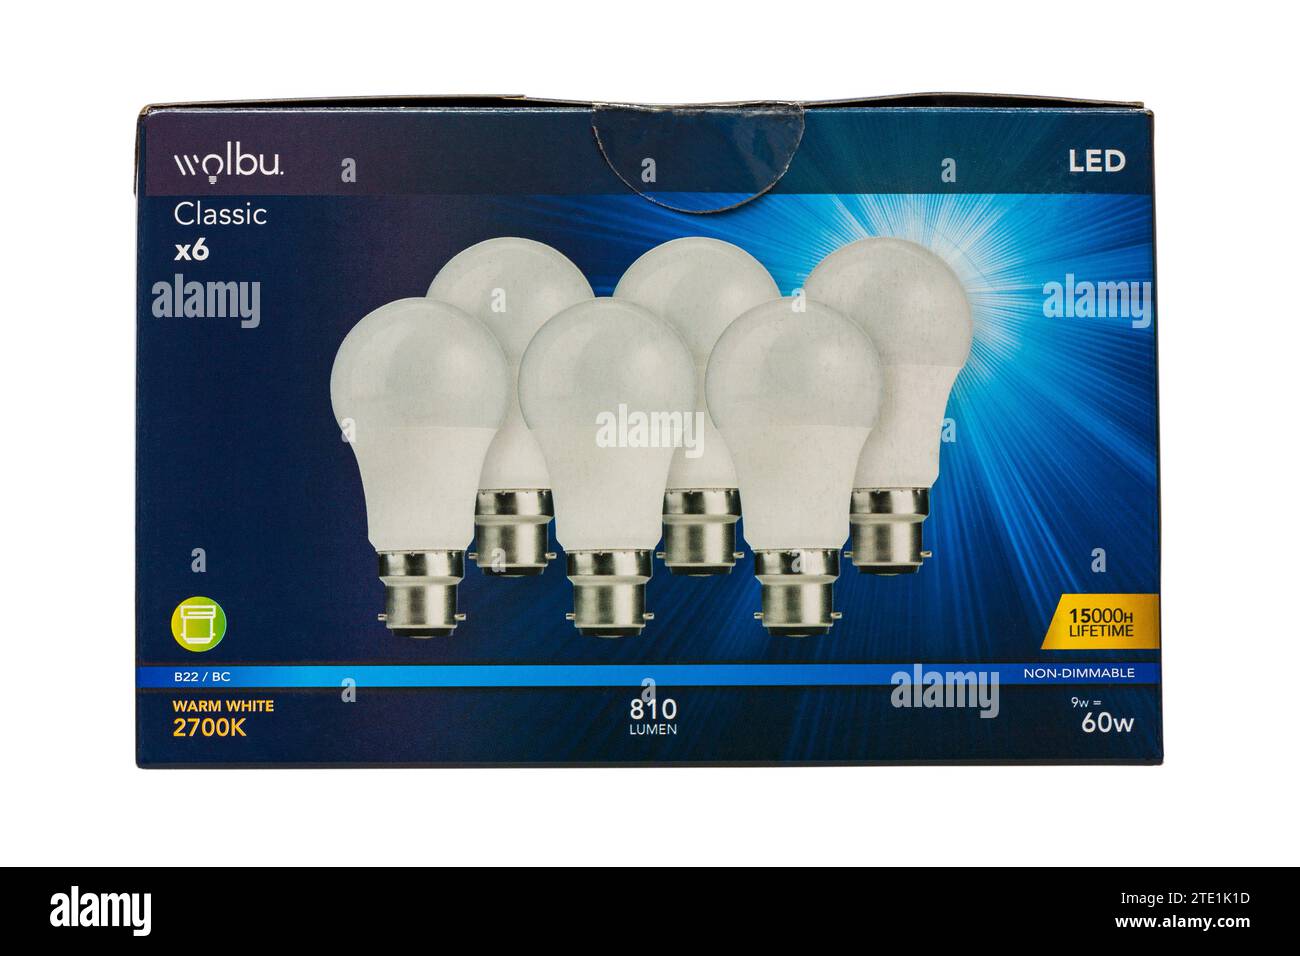 Wolbu light bulb LED energy saving lamp Stock Photo